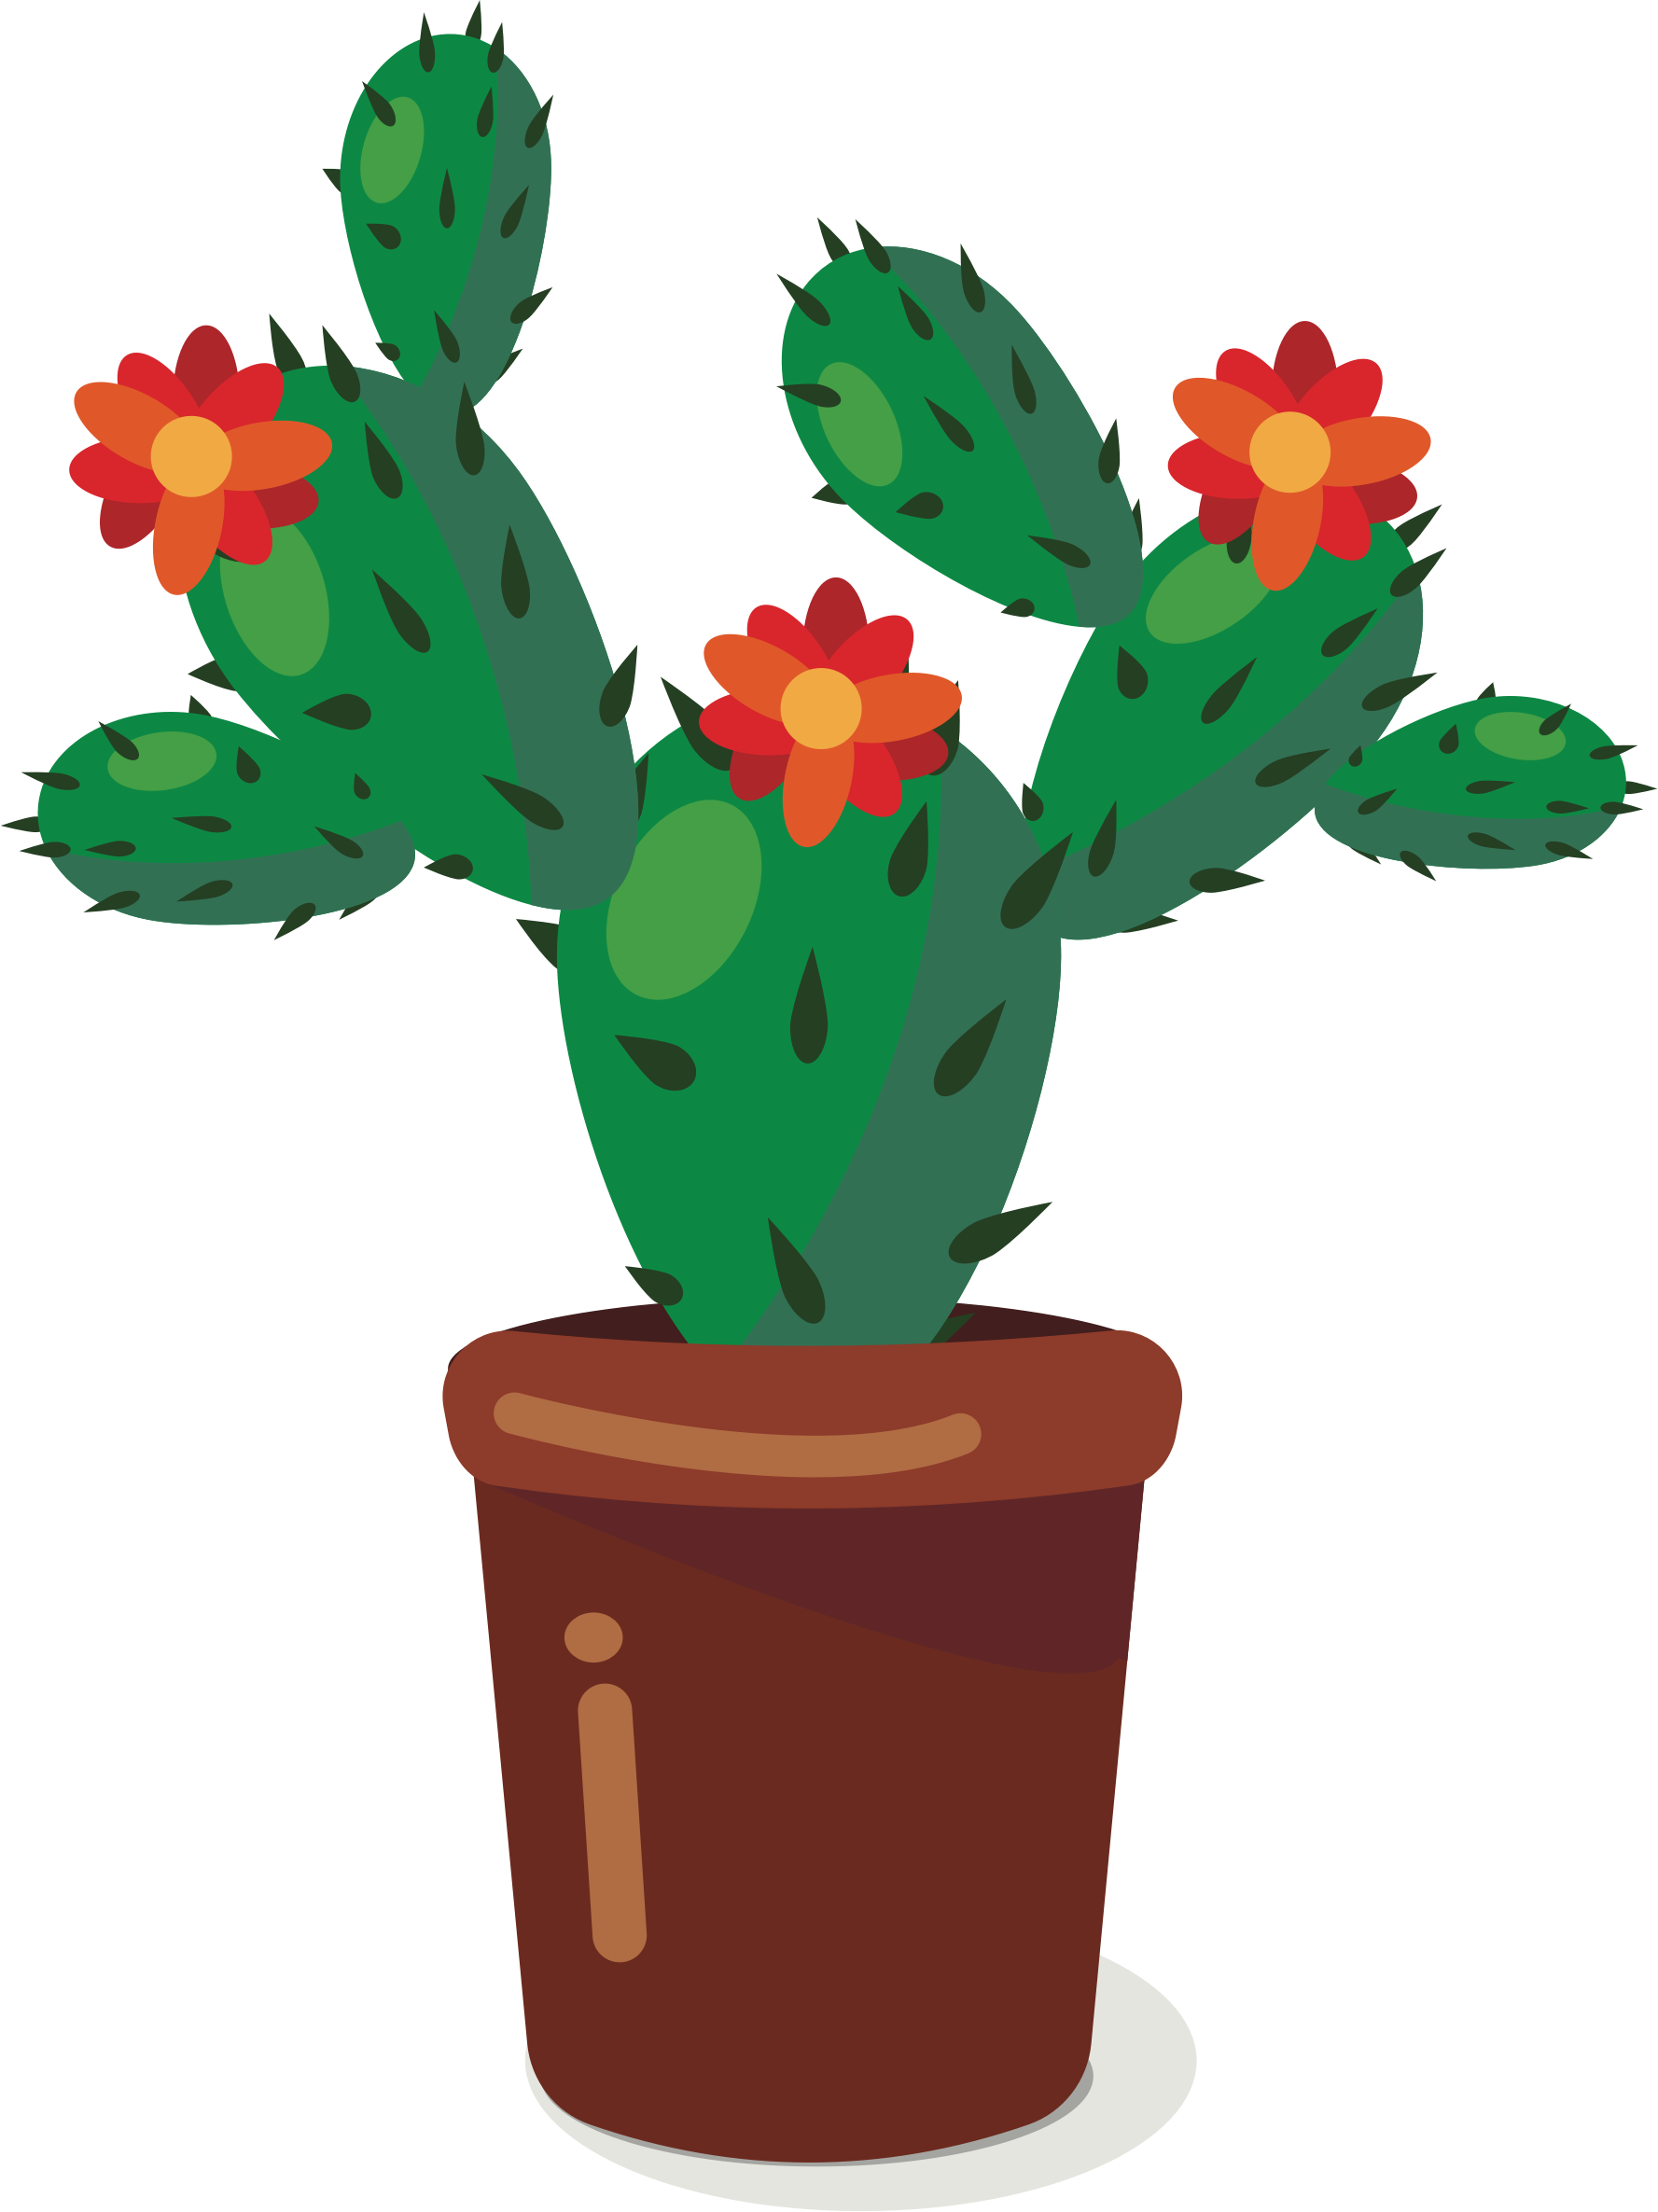 Cute cactus clipart.